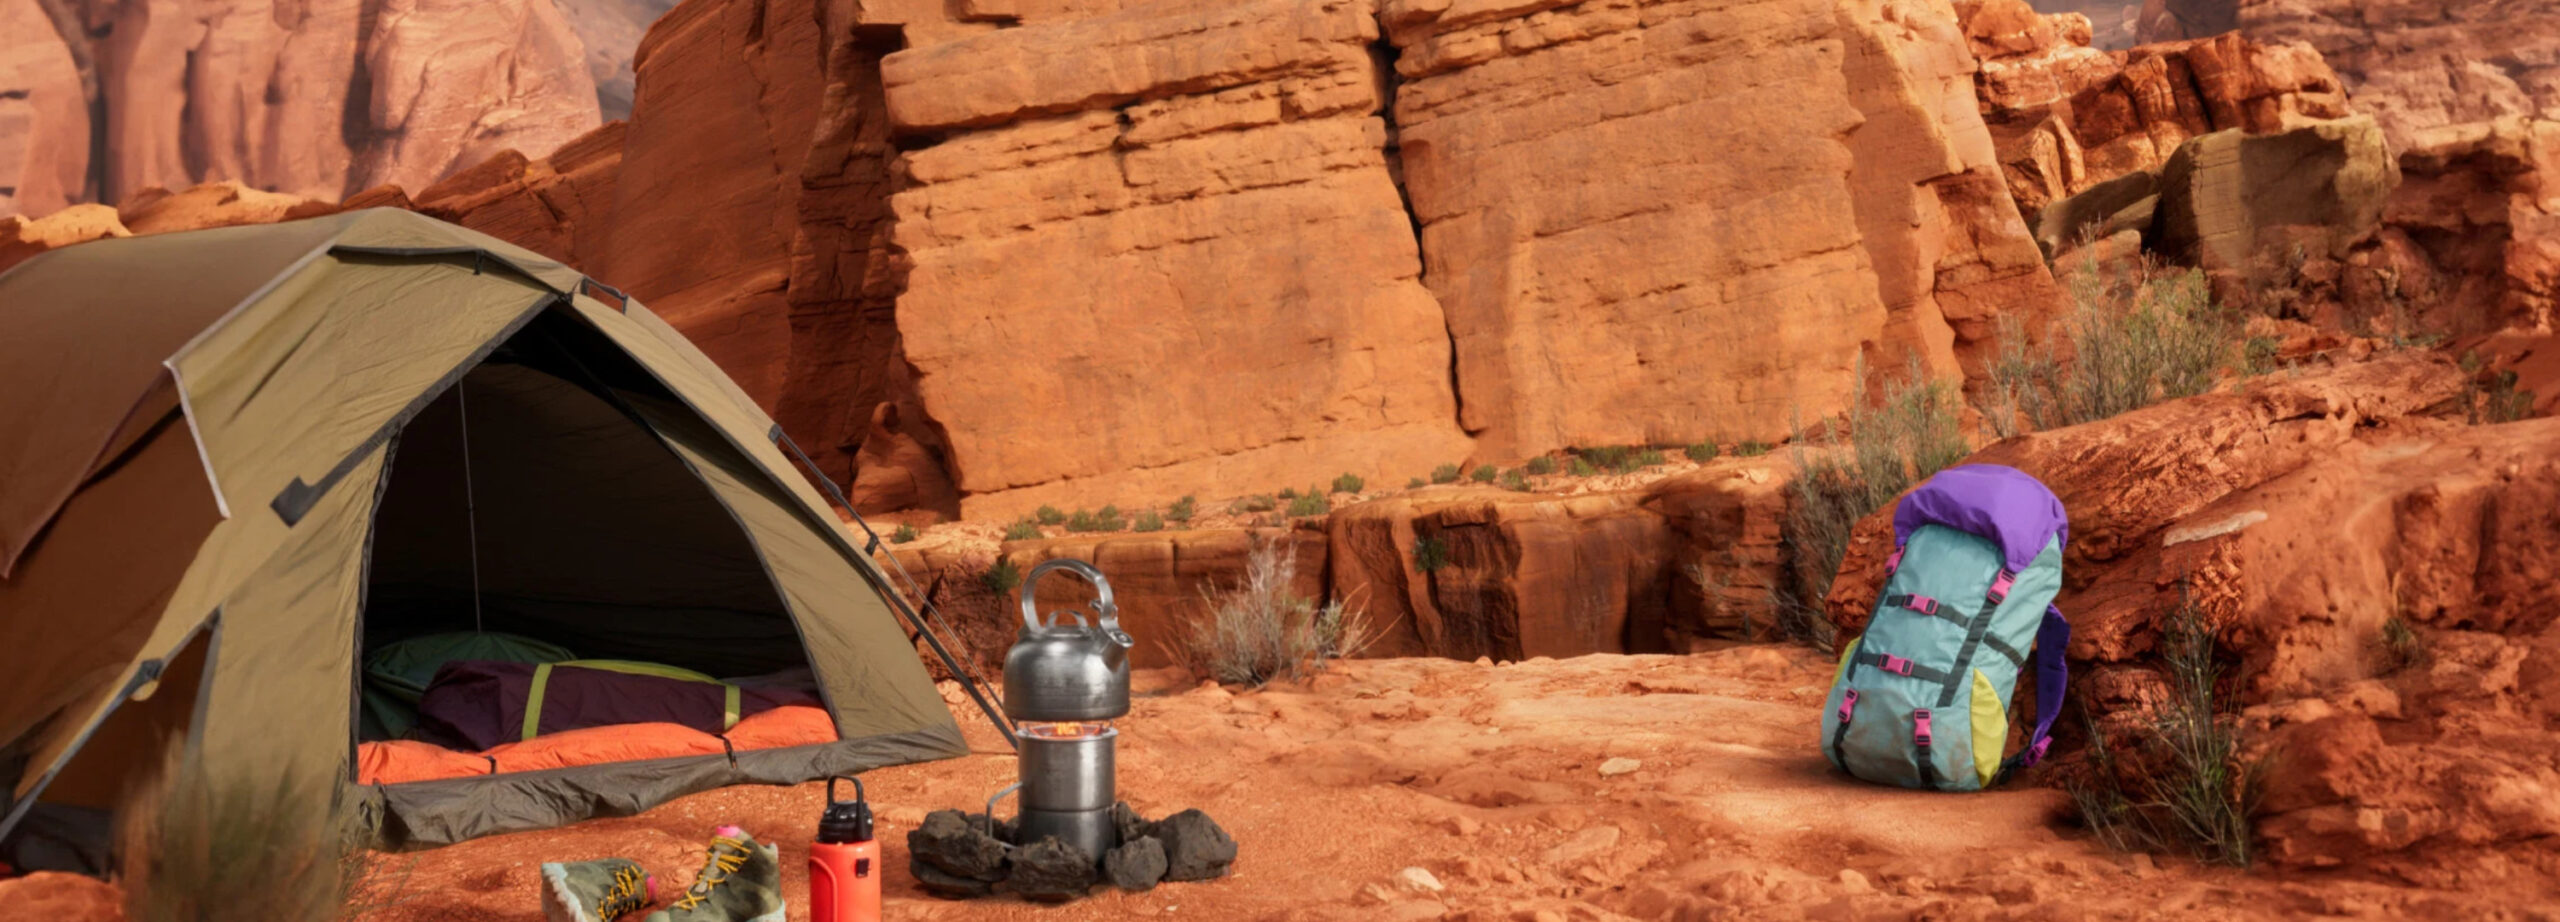 Uma tenda de camping marrom montada em um terreno arenoso com uma mochila colorida e um fogareiro com uma chaleira. O fundo mostra imponentes formações rochosas de cor vermelha sob um céu azul claro, evocando o espírito de aventura no deserto.